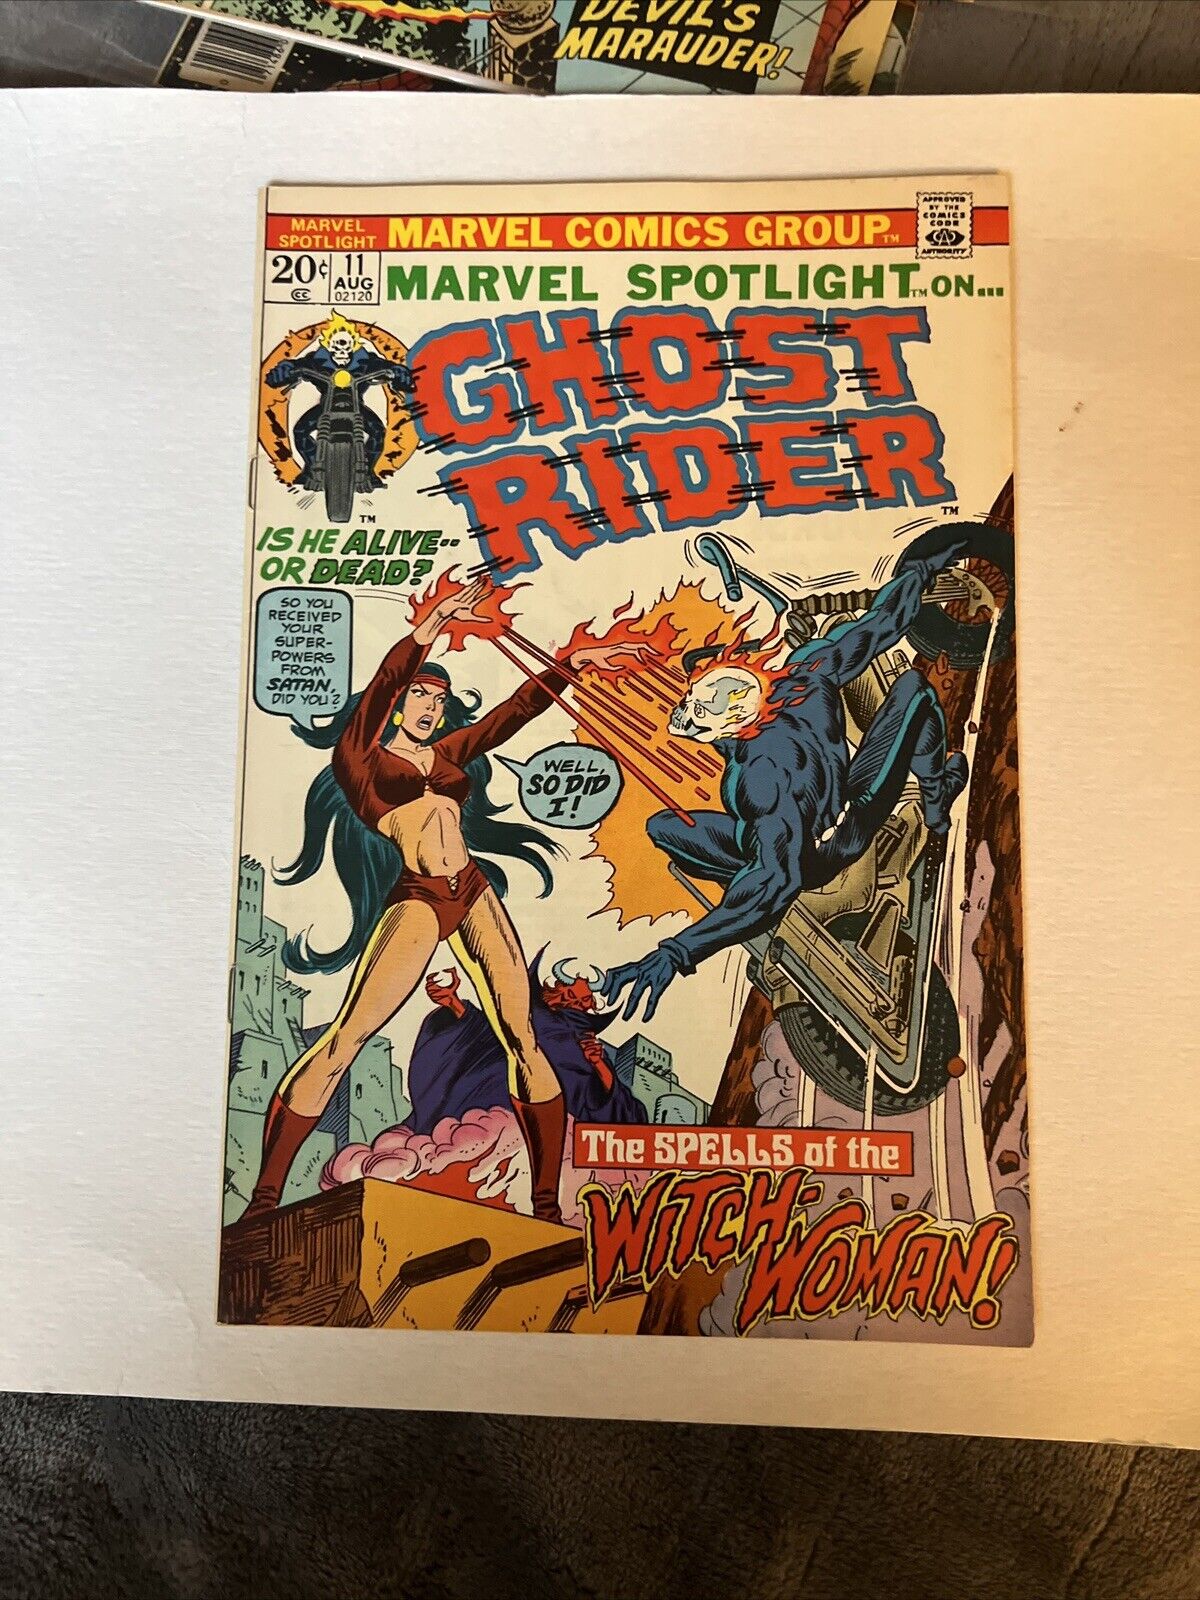 Marvel Spotlight on Ghost Rider Comic Vol 1 #11 Aug 1973 Marvel Issue